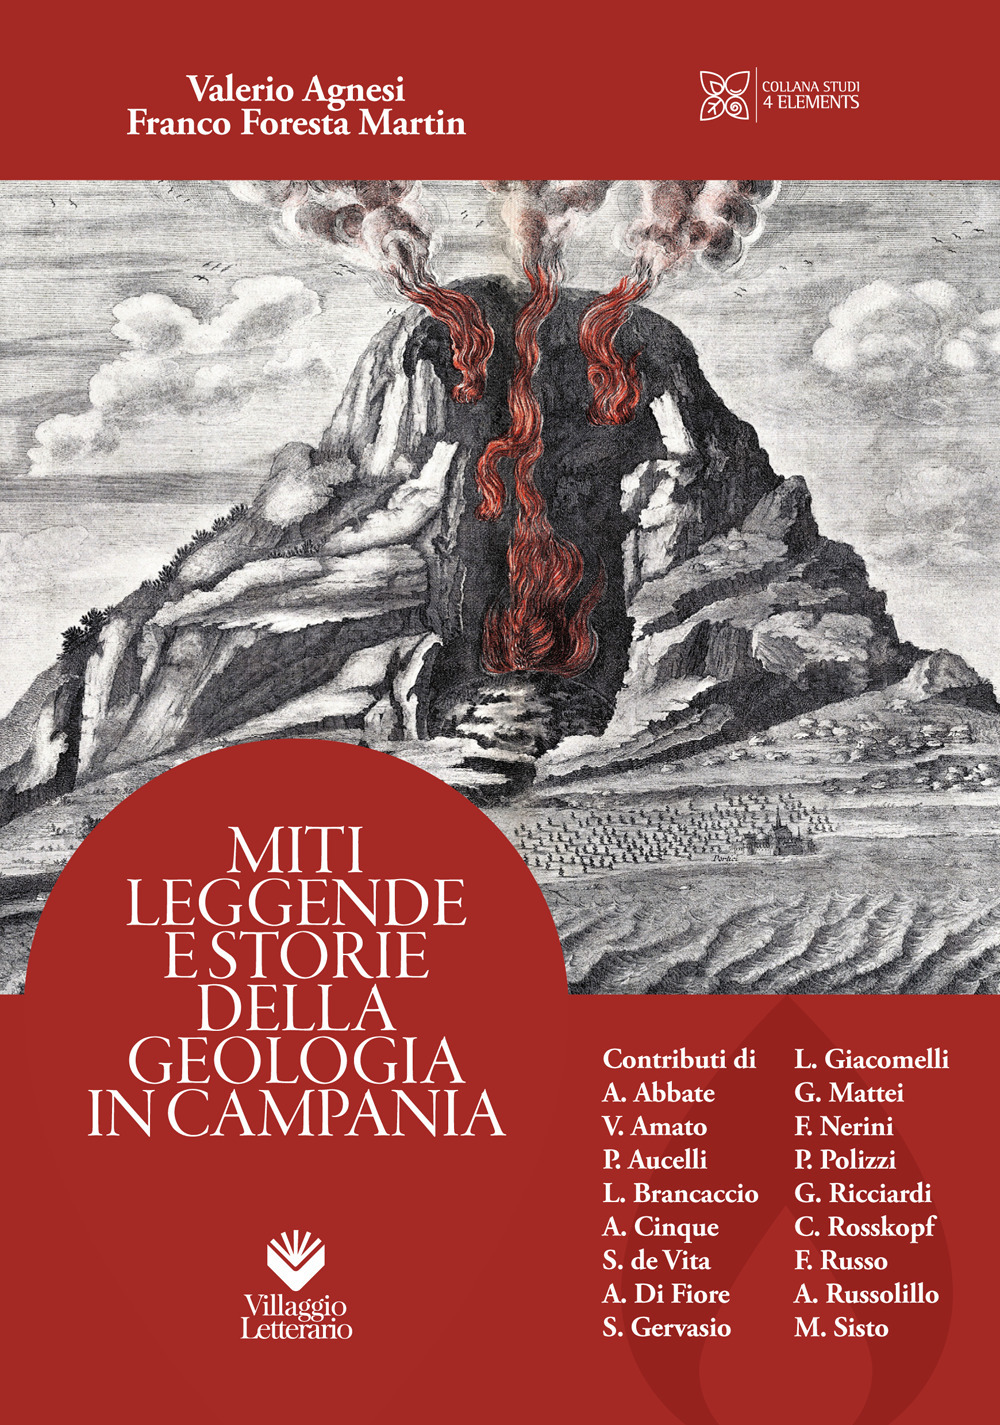 Miti leggende e storie della geologia in Campania